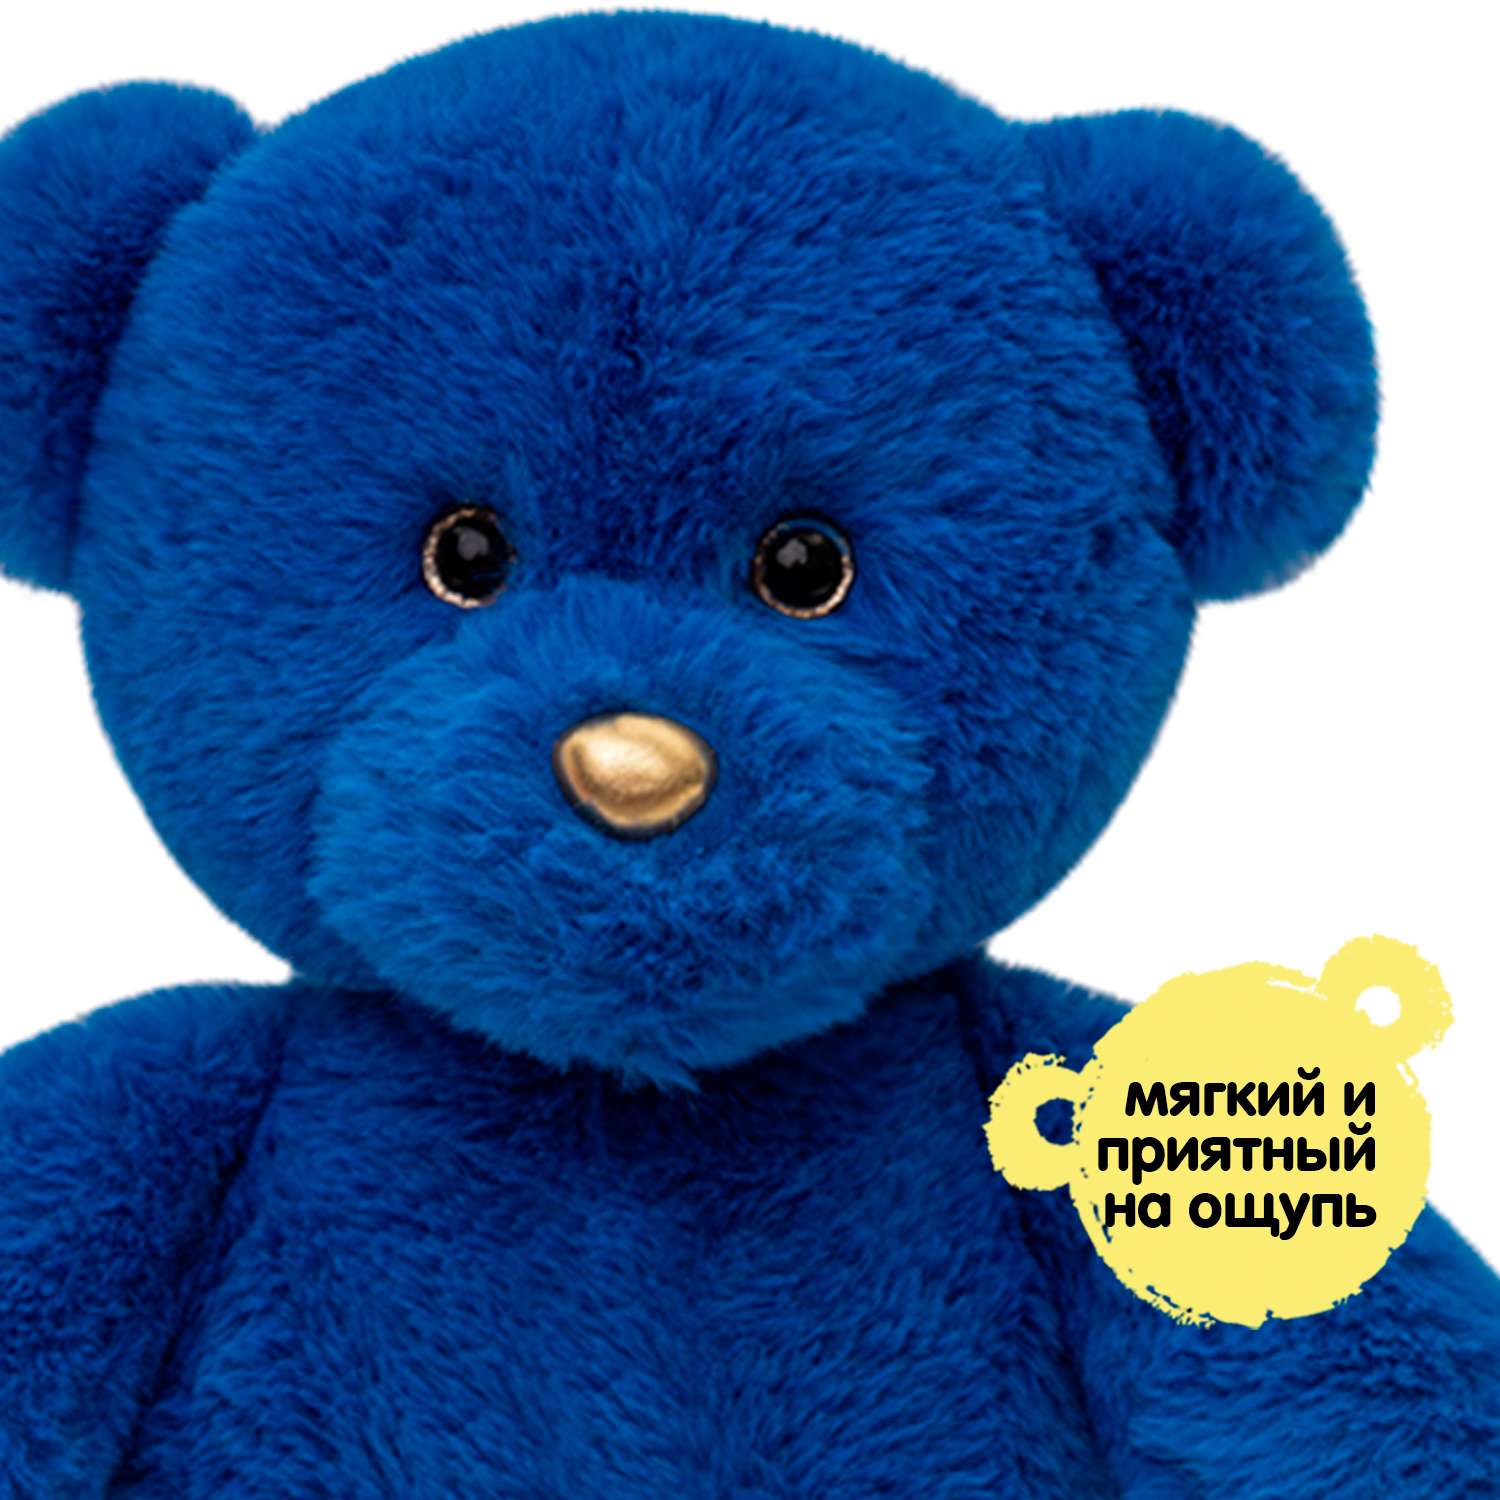 Мягкая игрушка KULT of toys Плюшевый мишка 35 см цвет синий - фото 7